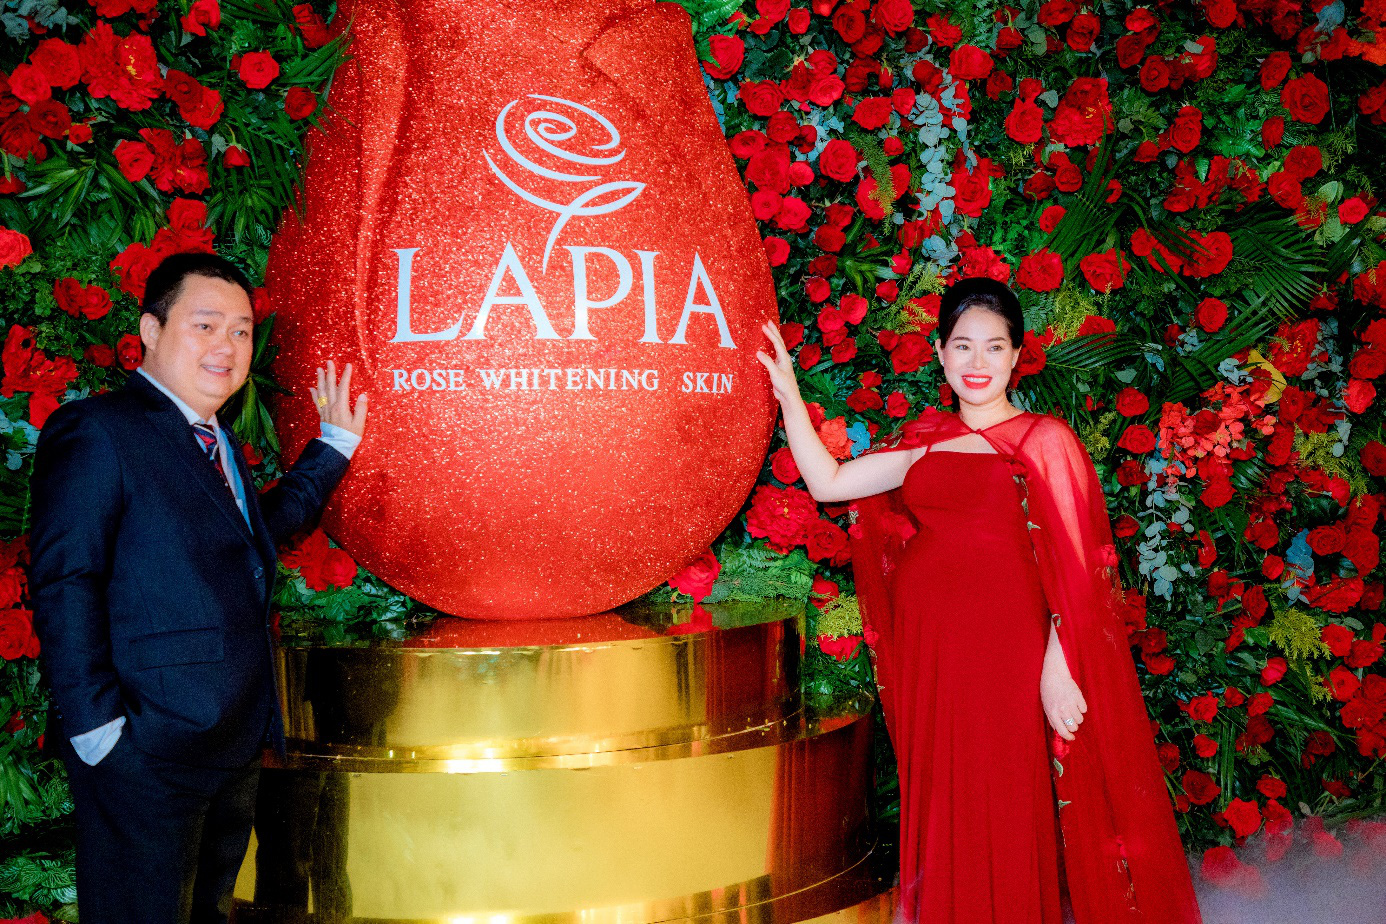 Lapia Rose Whitening Skin ra mắt cực ấn tượng tại sự kiện “Hoa hồng Lapia” - Ảnh 2.